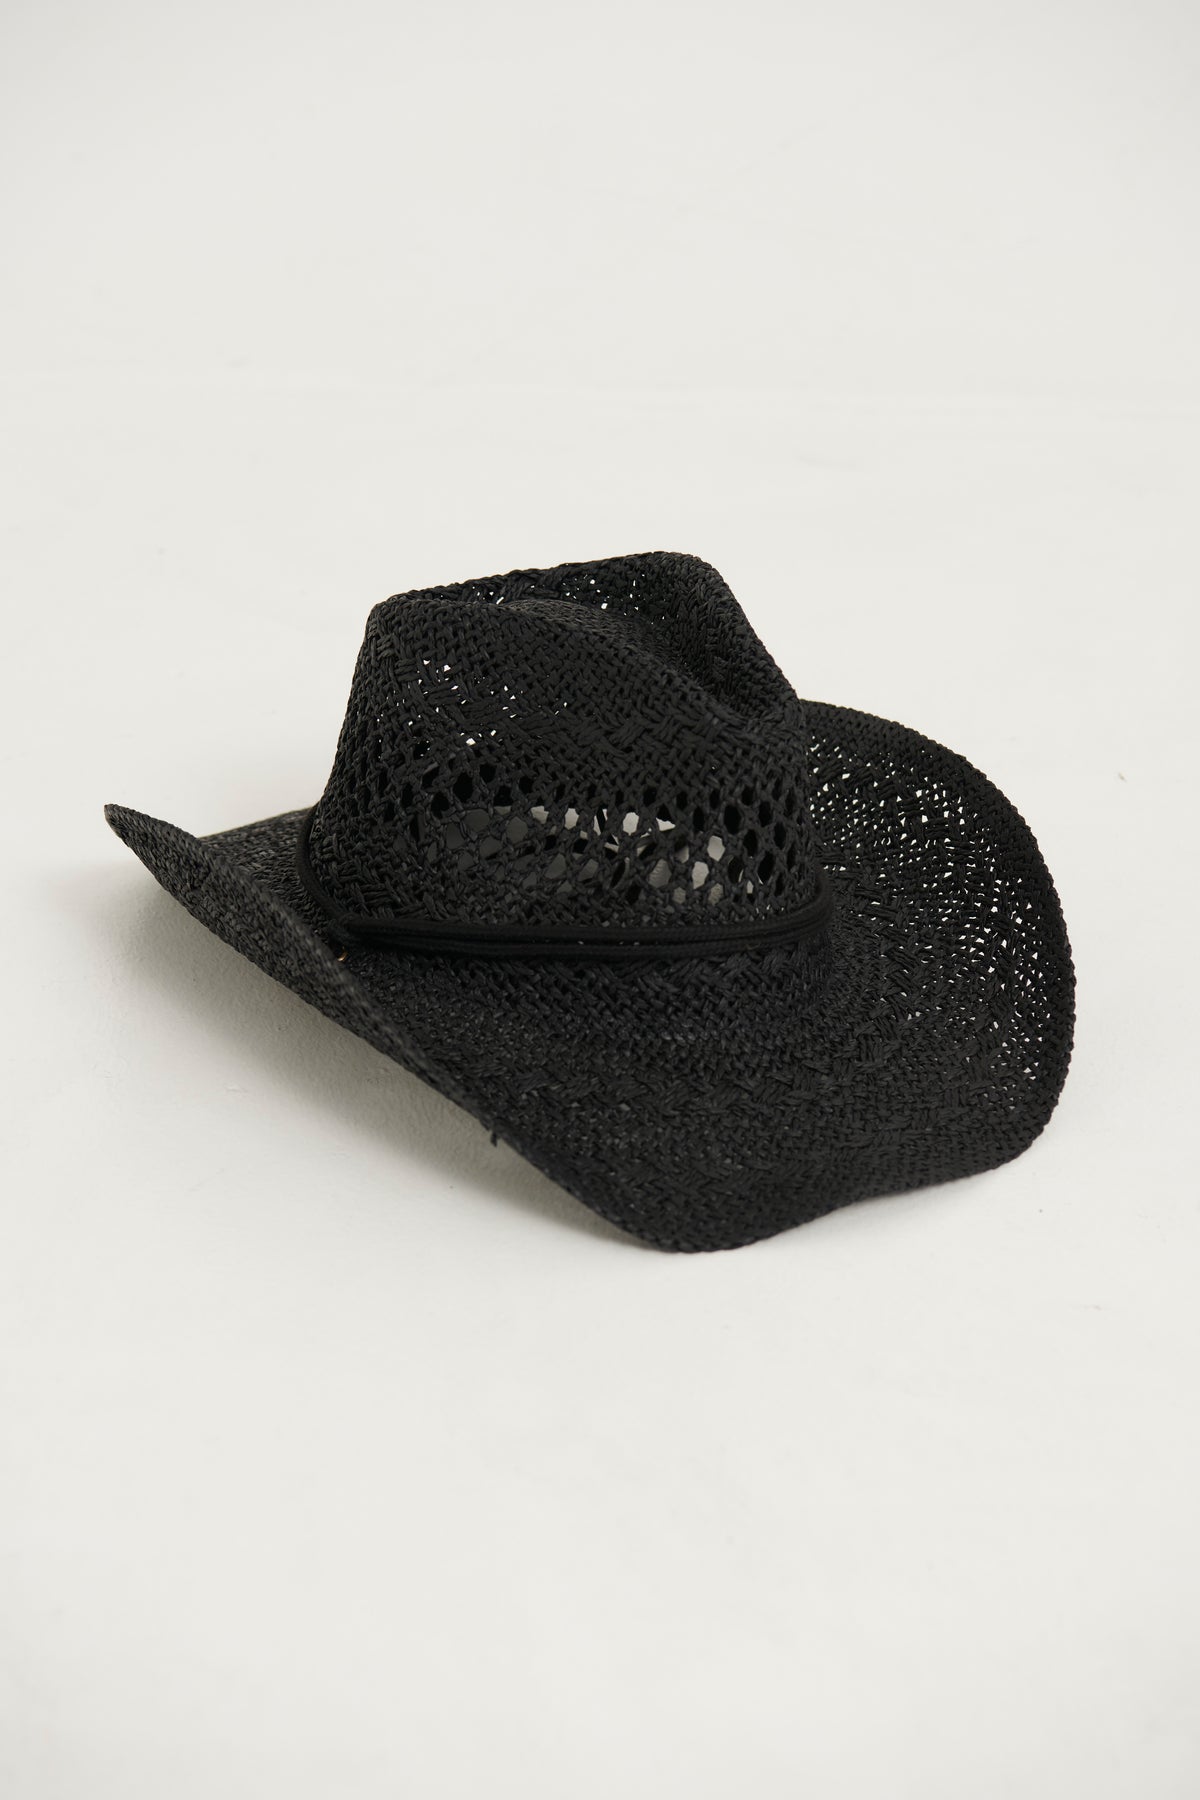 Western Festival Straw String Hat Black